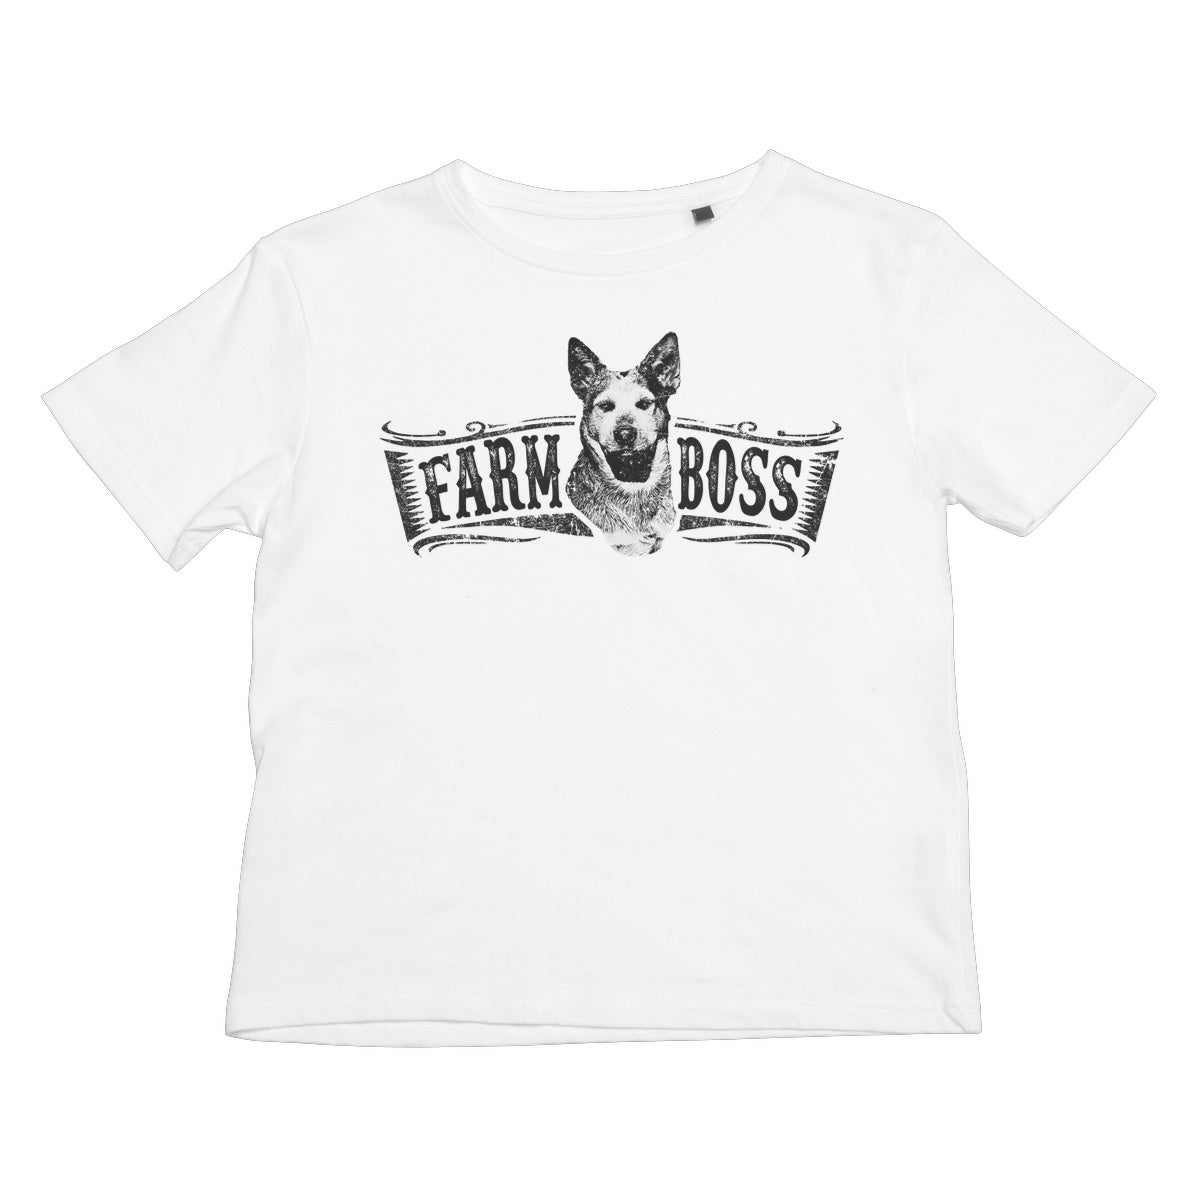 Farm Boss Kids T-Shirt